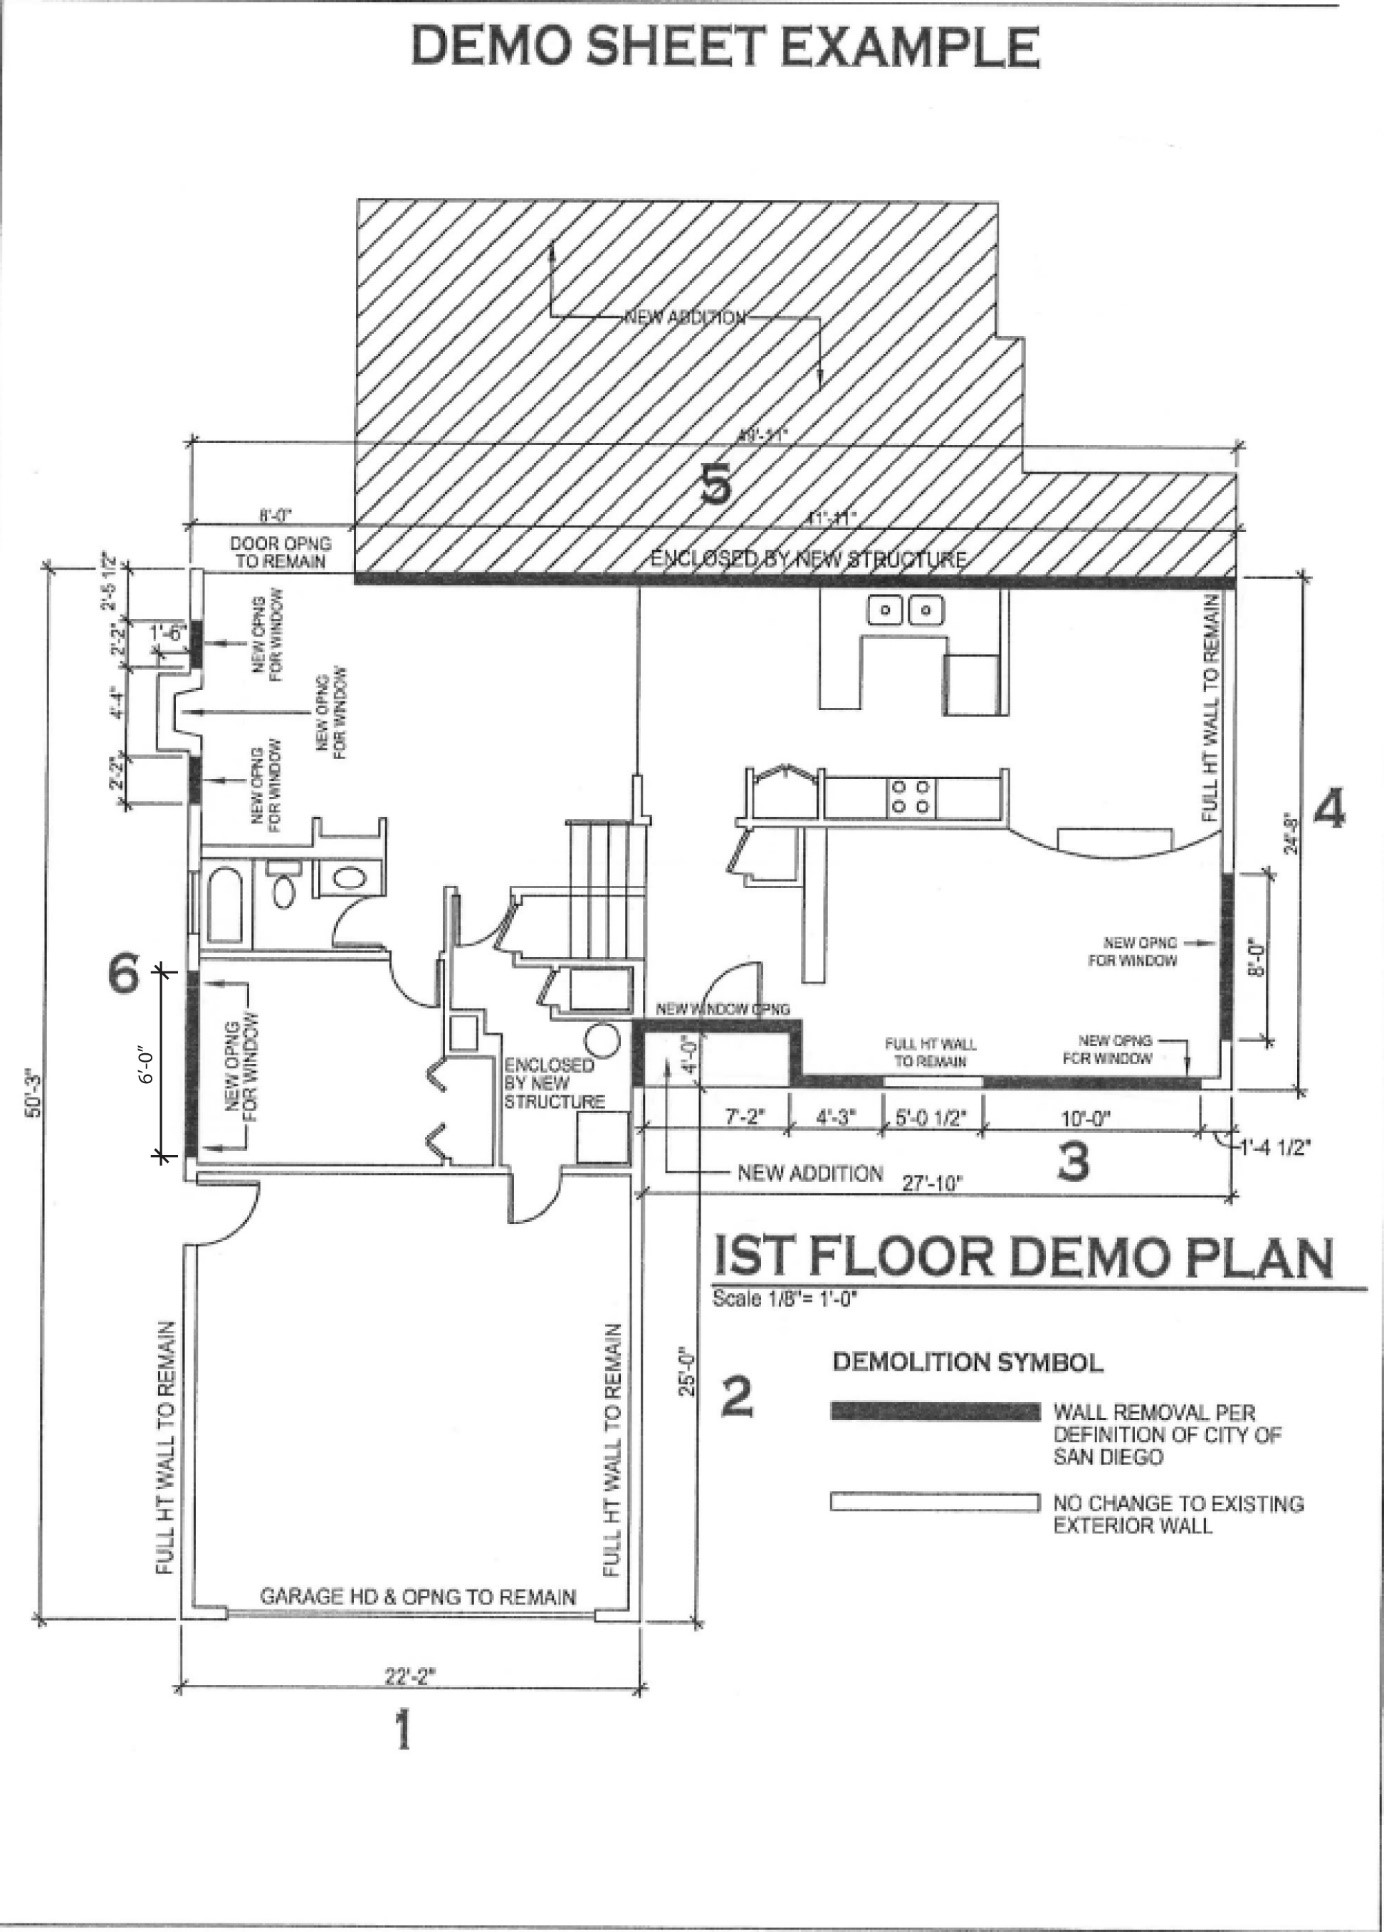 Demo sheet example of 1st floor